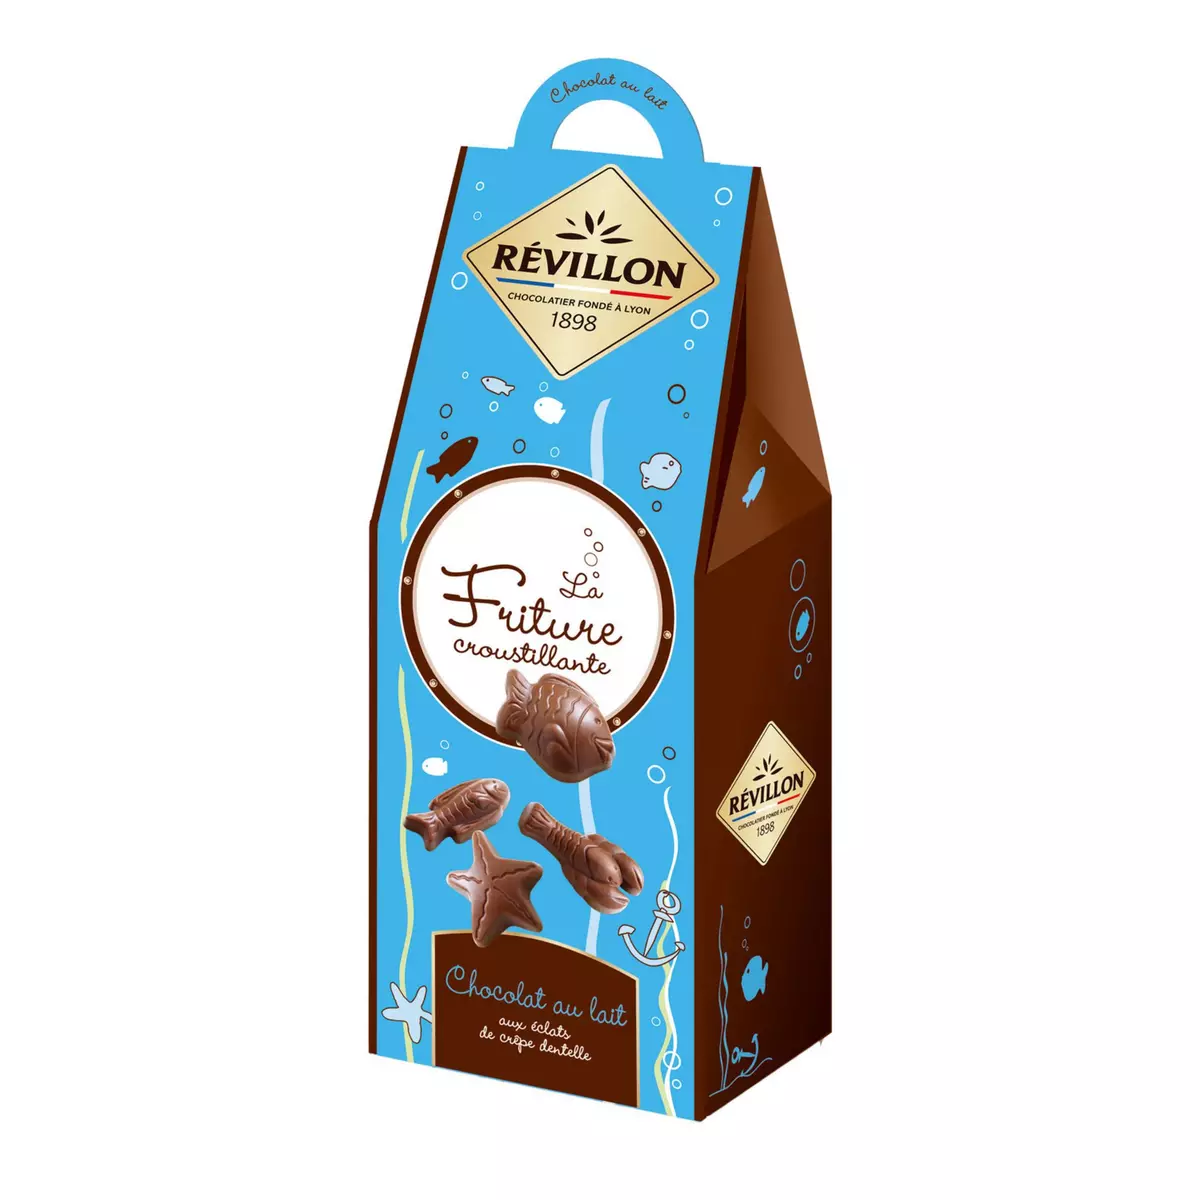 REVILLON CHOCOLATIER La Friture chocolat au lait feuilleté aux éclats de crêpe croustillante 190g